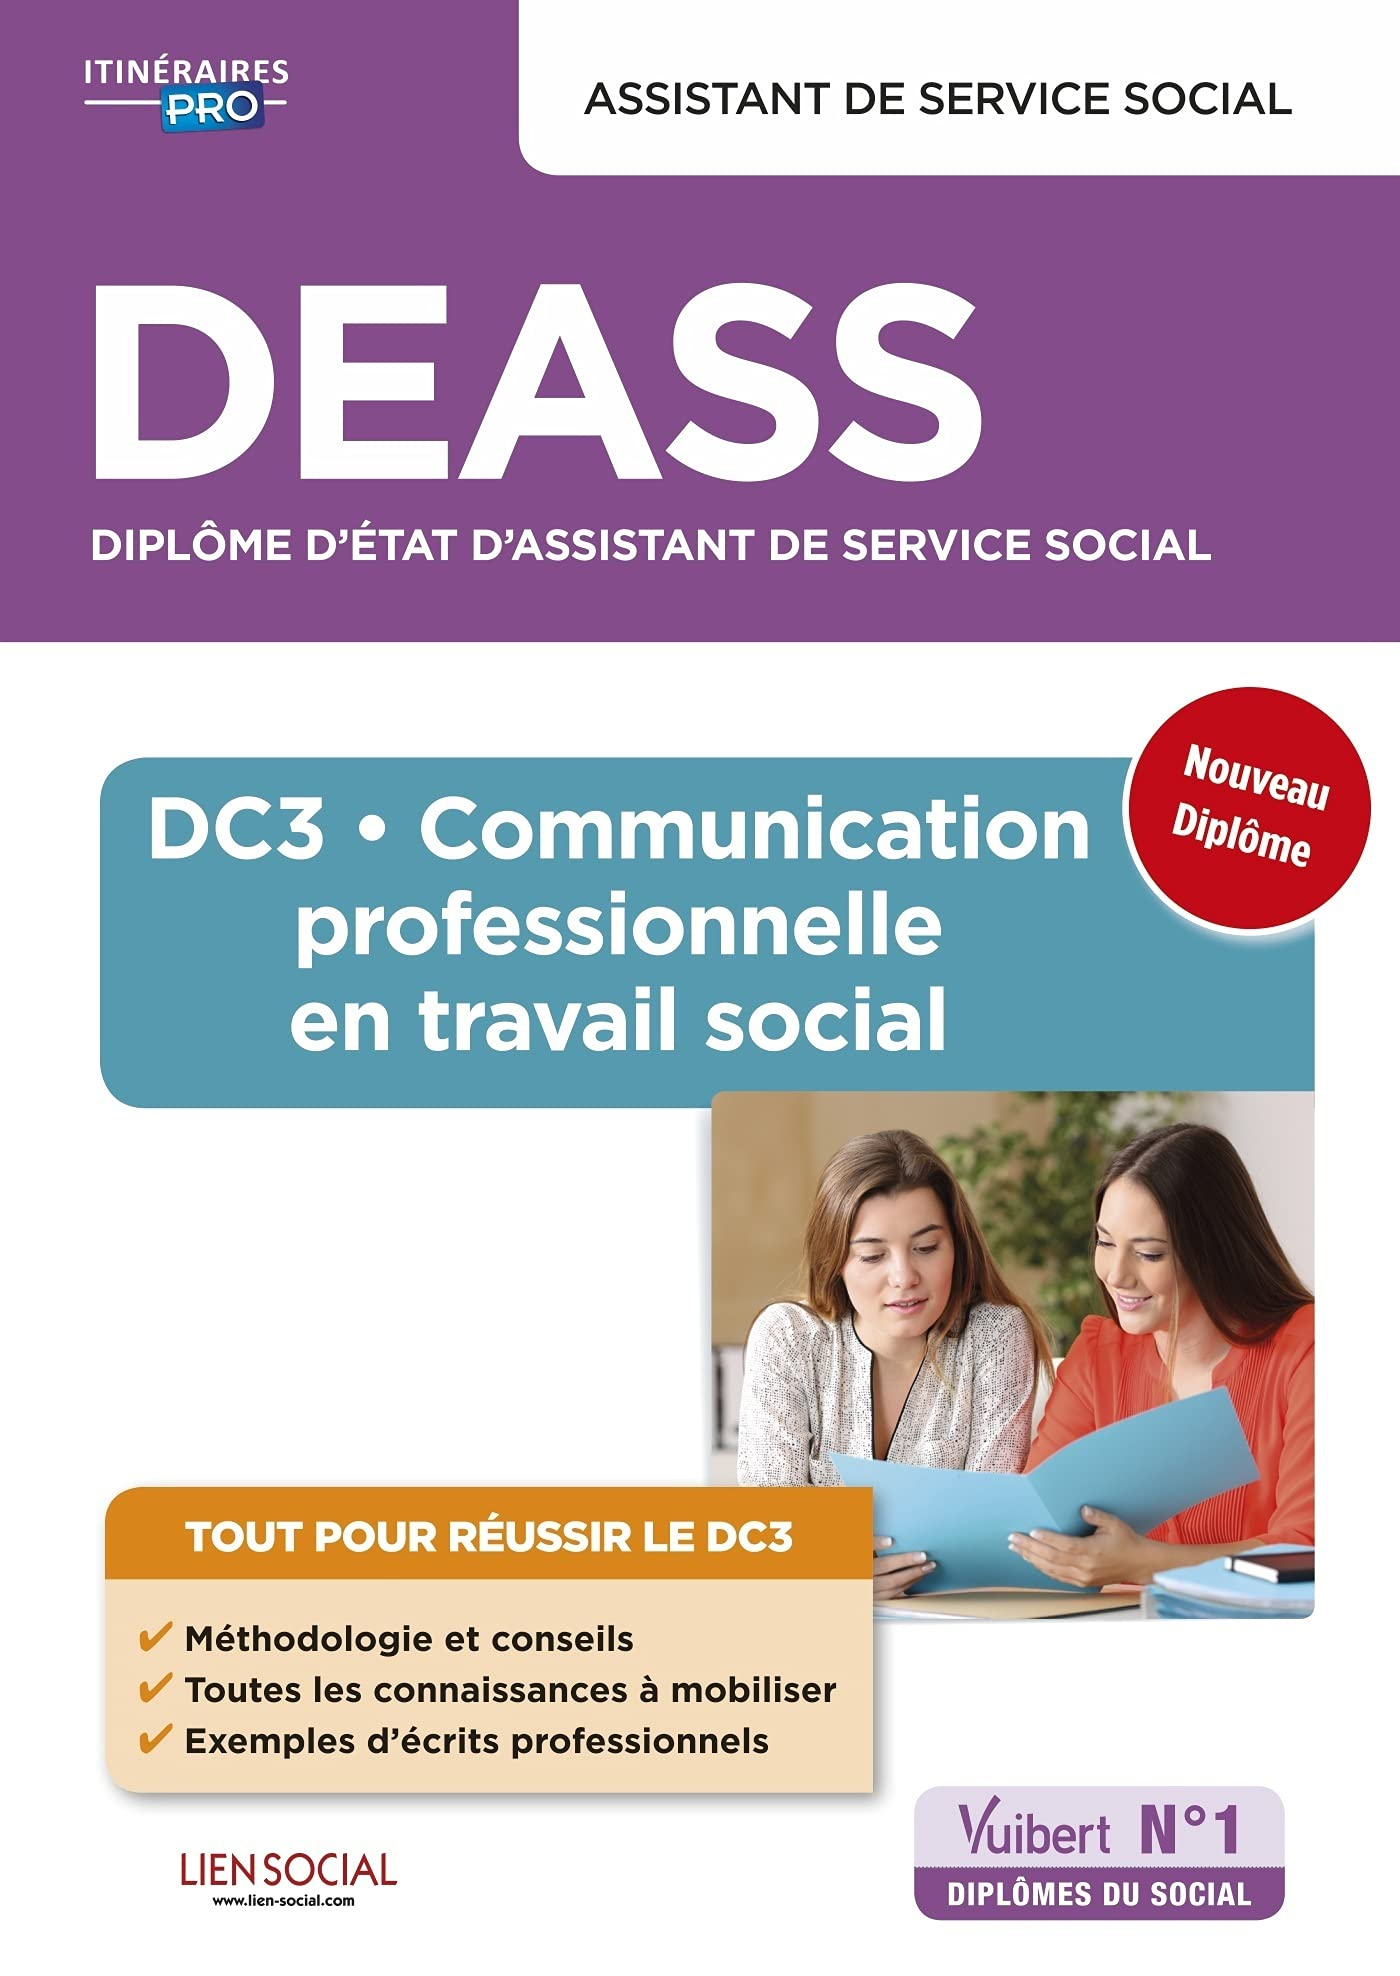 DEASS diplôme d'Etat d'assistant de service social : DC 3, communication professionnelle en travail 